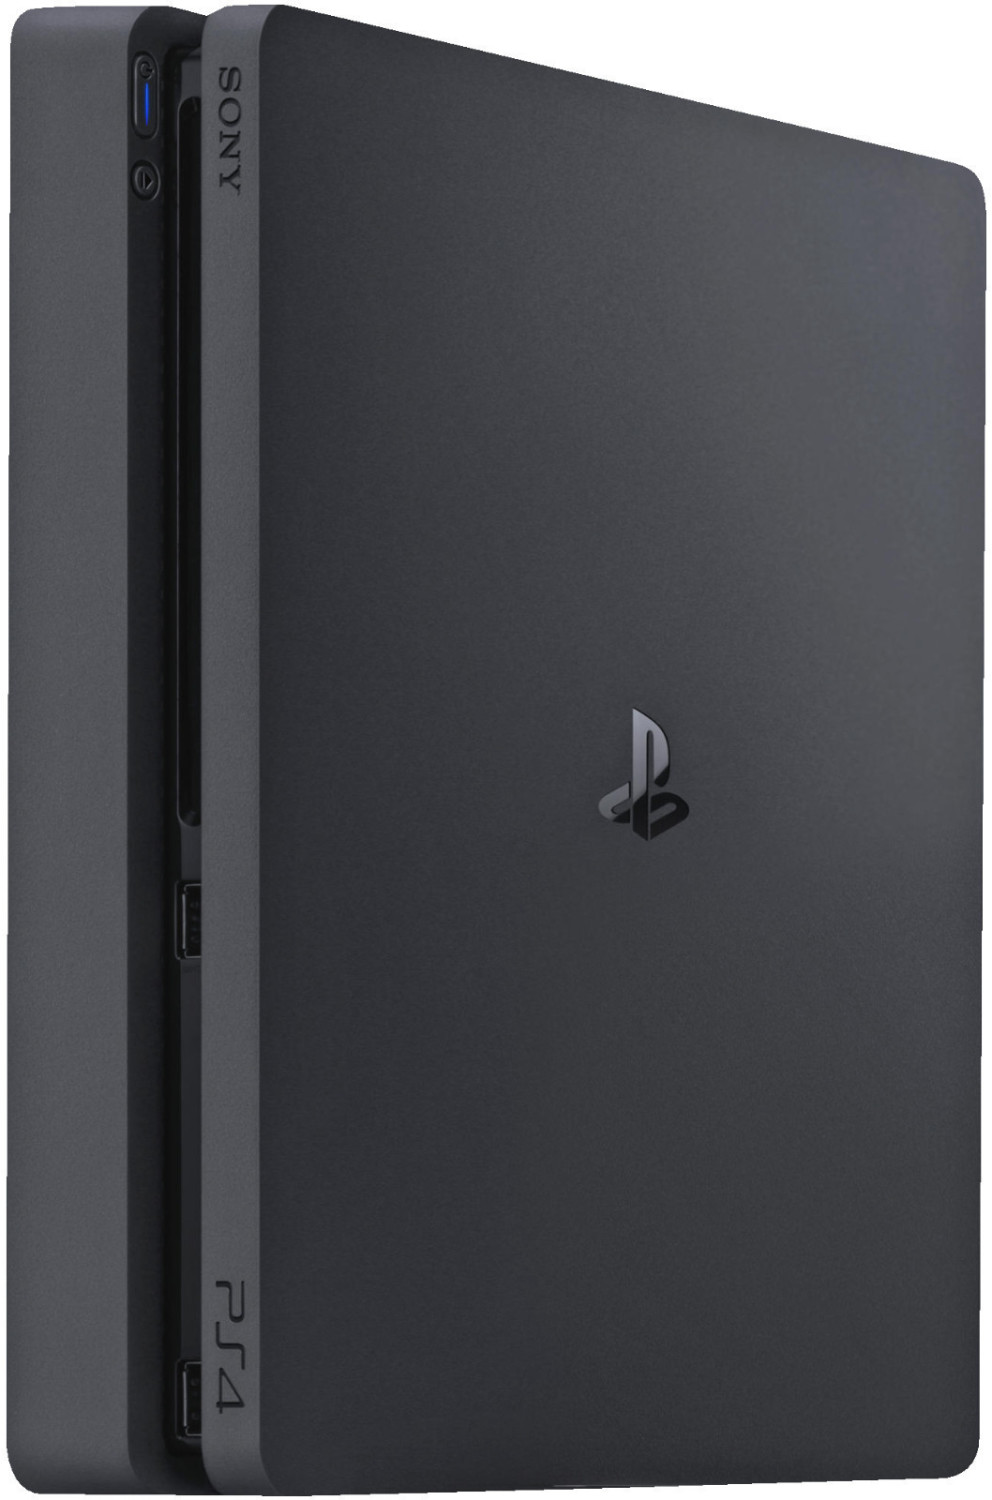 Sony playstation 4 slim (500 go) - jet black - console de jeux-vidéo  nouvelle génération avec disque dur 500 go et manette sans fil  0711719845454 - Conforama